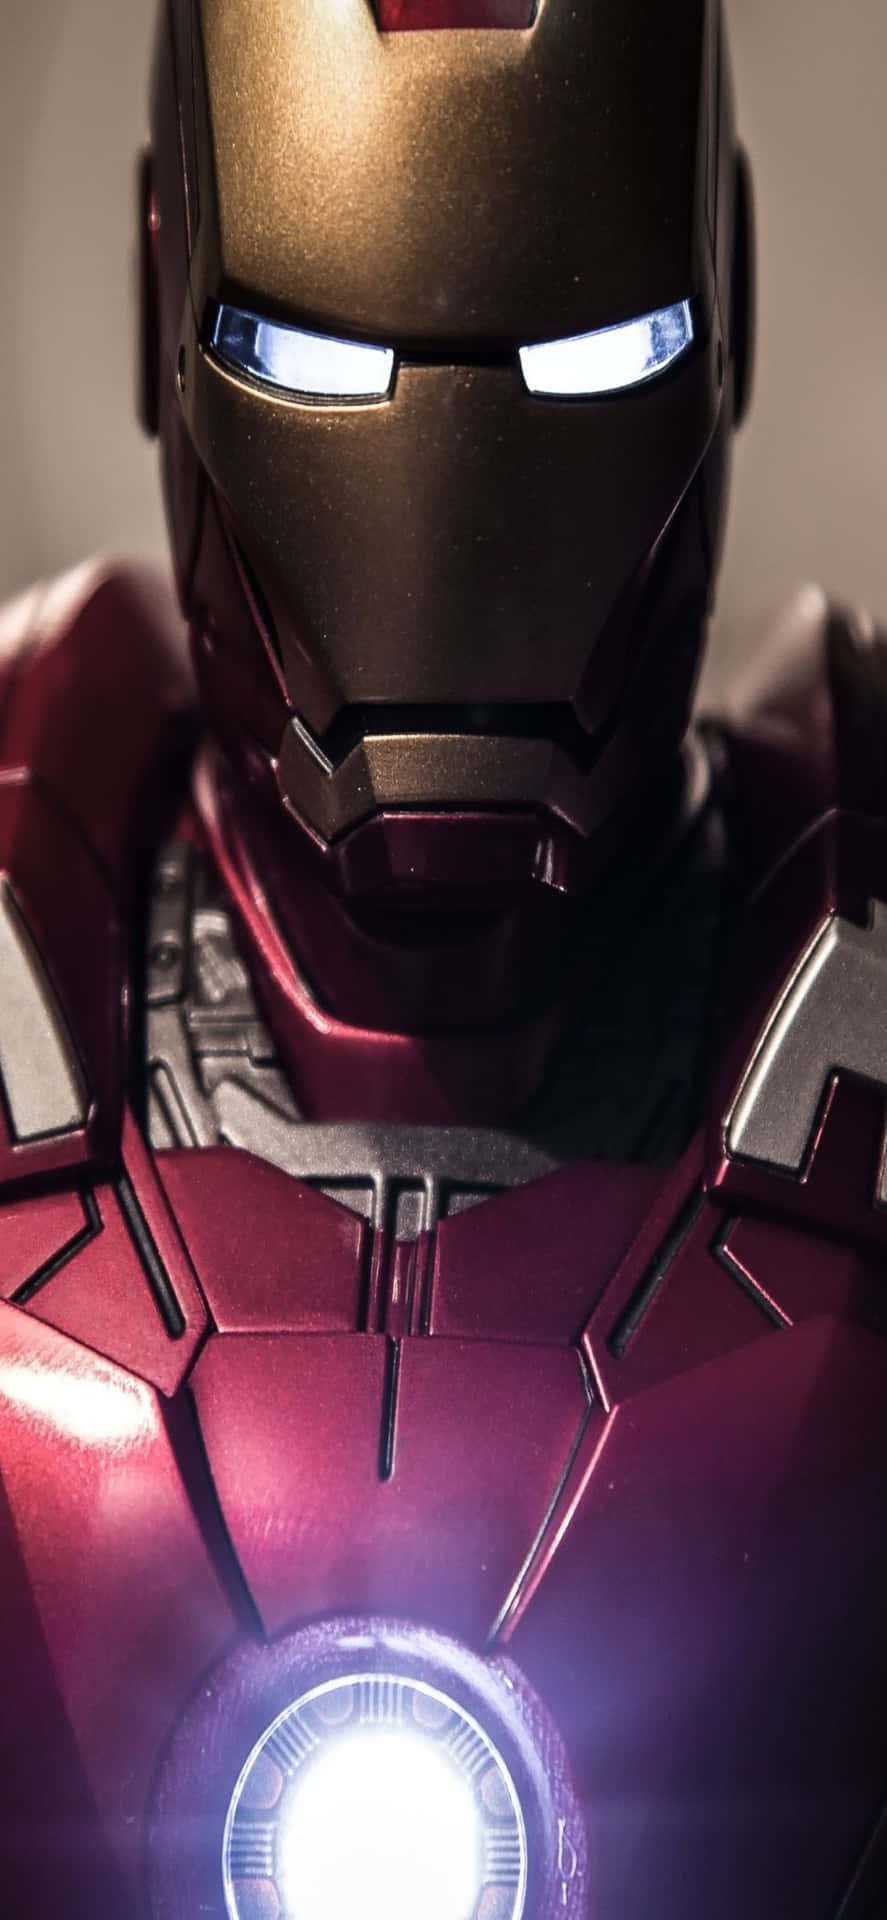 Fondode Pantalla De Iron Man Para Iphone X Con Traje Brillante De Iron Man.